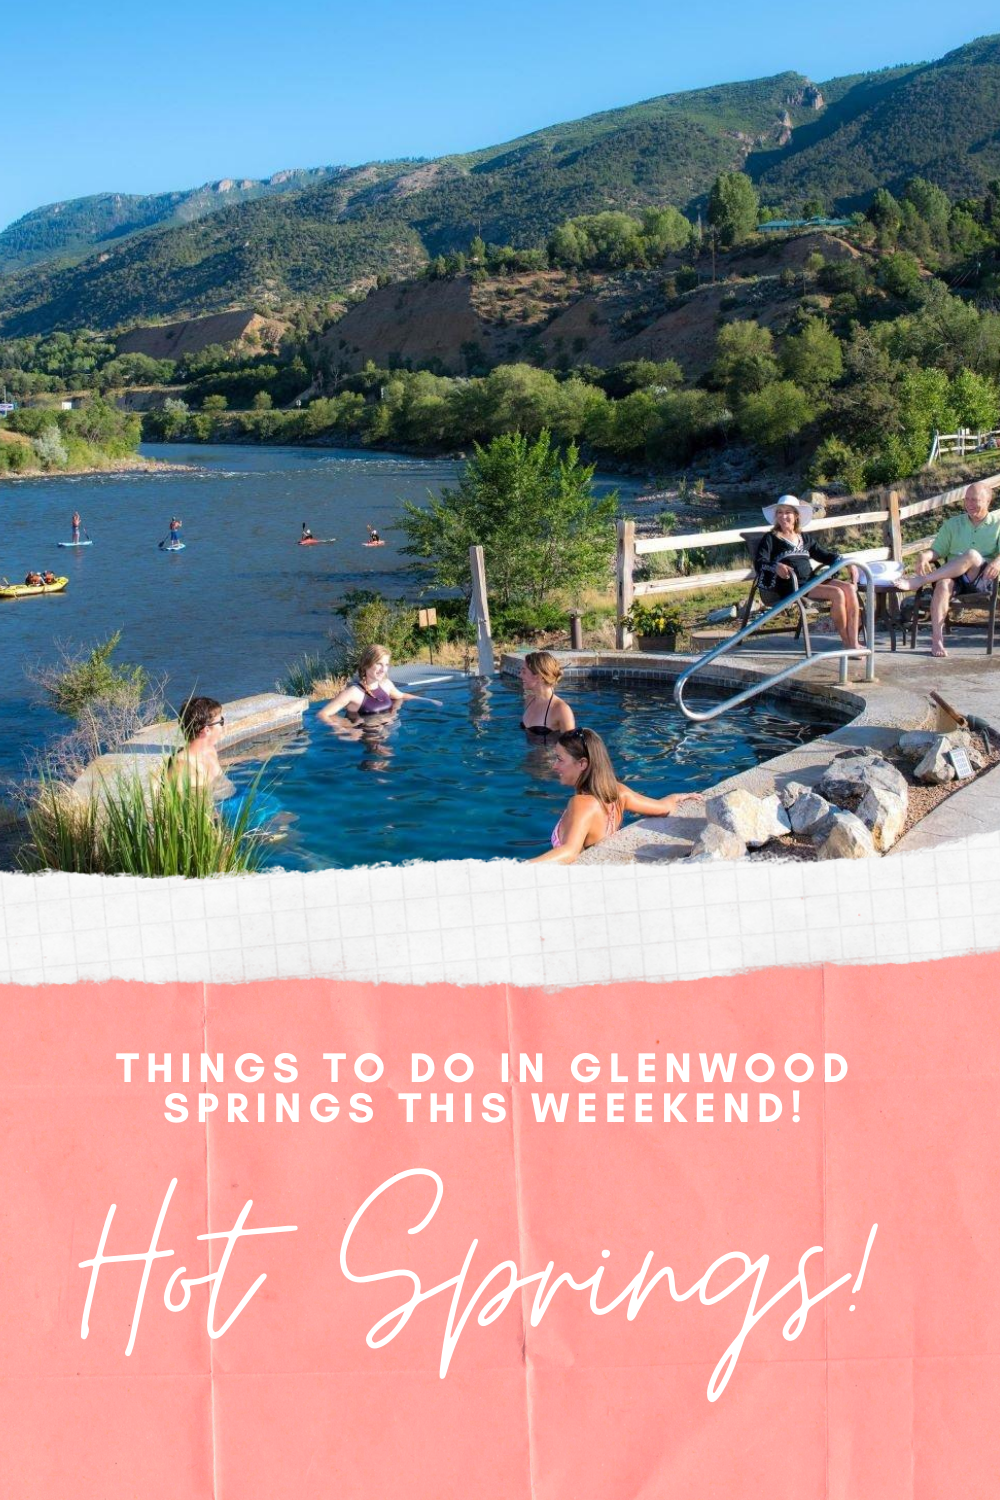 Things to do in glenwood springs